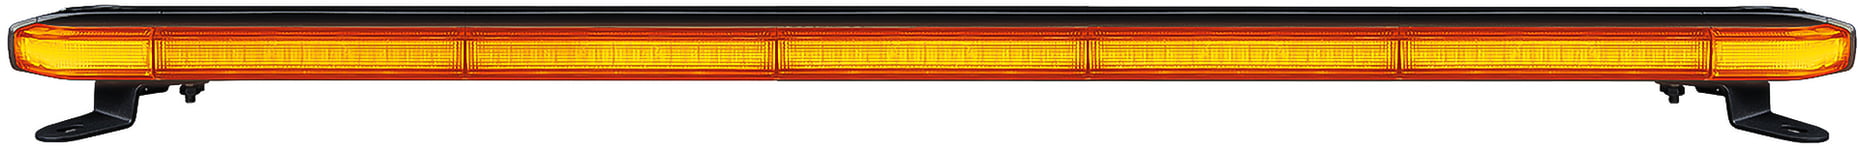 Varningsljus CRUISE LIGHT ROOF BAR BLIXTLJUSRAMP 924,4MM Strands